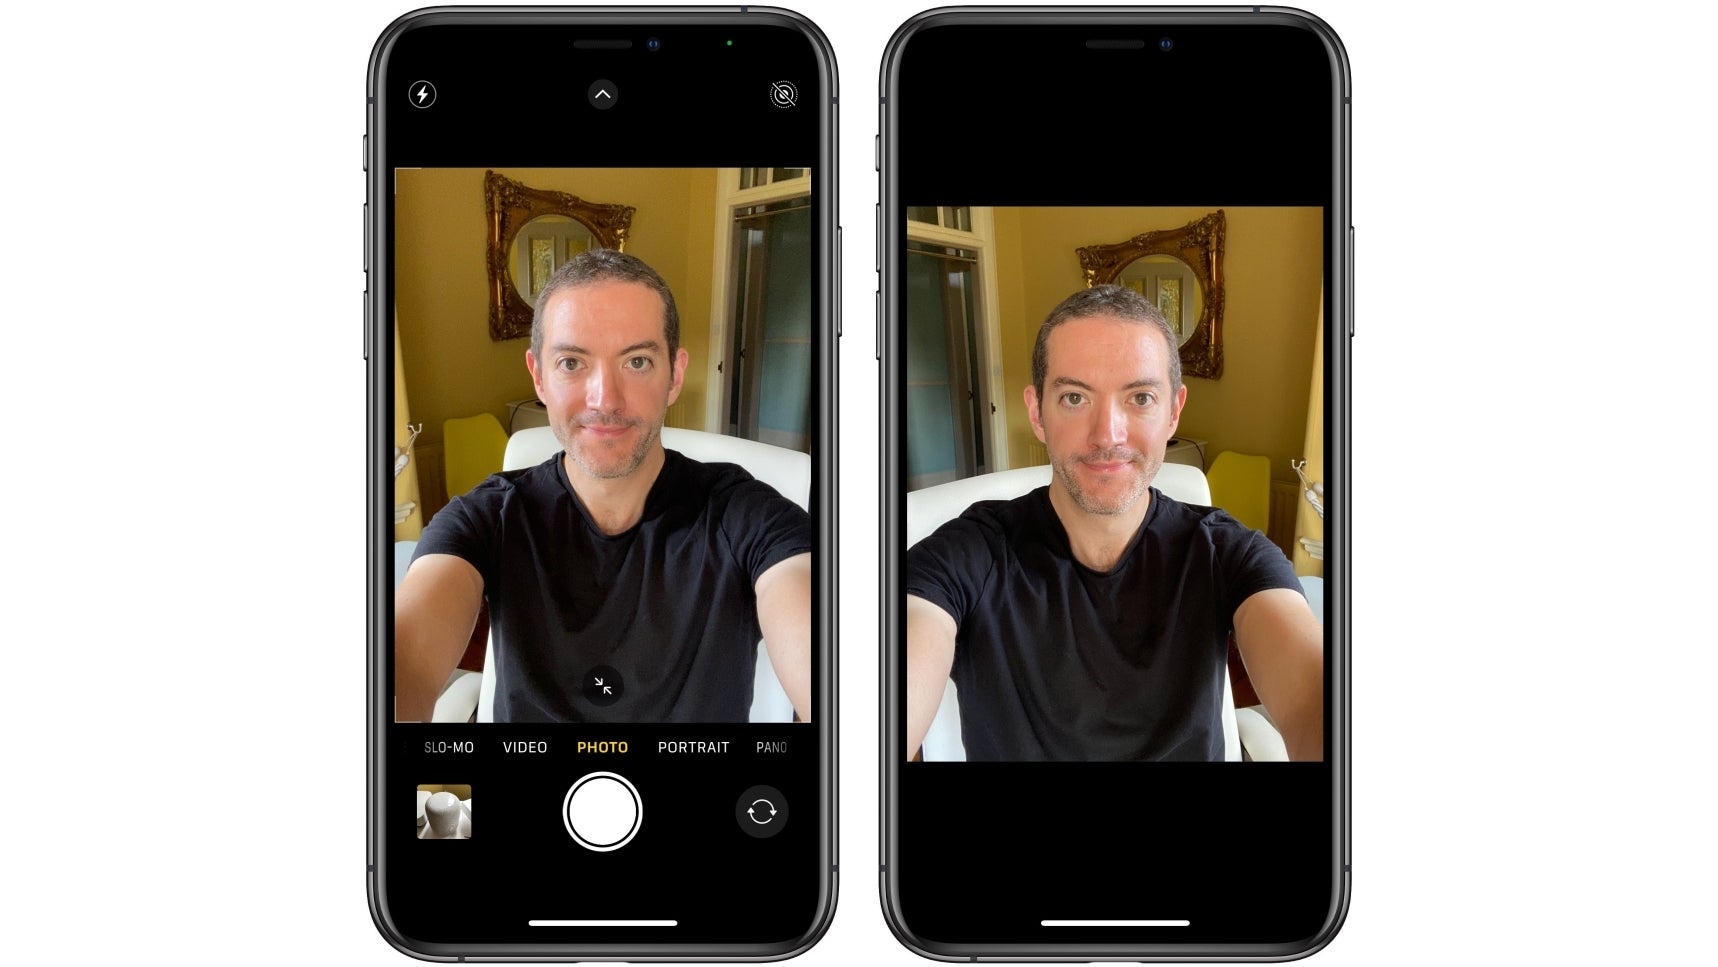 Aynalı selfieler daha iyi görünebilir çünkü beyniniz öyle düşünüyor!  - iPhone ile fotoğraf çekmek asla eskisi gibi olmayacak: Şimdi ihtiyacınız olan, oyunun kurallarını değiştiren 5 kamera numarası!